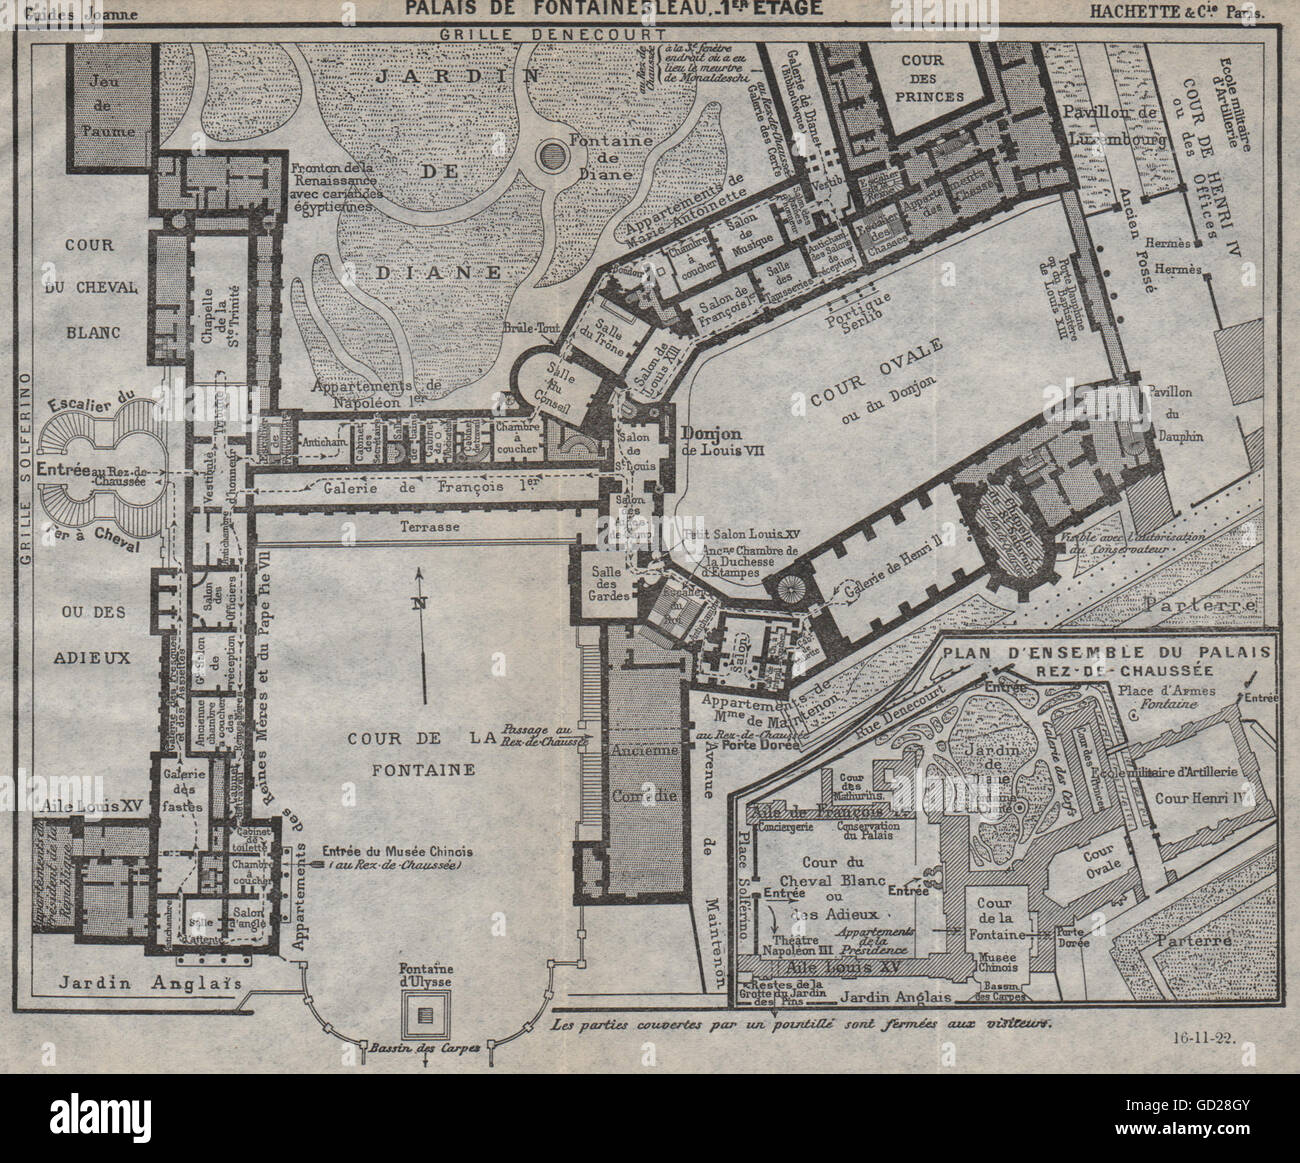 PALAIS DE FONTAINEBLEAU. 1er étage. 1st floor. Vintage map. Seine-et-Marne 1922 Stock Photo